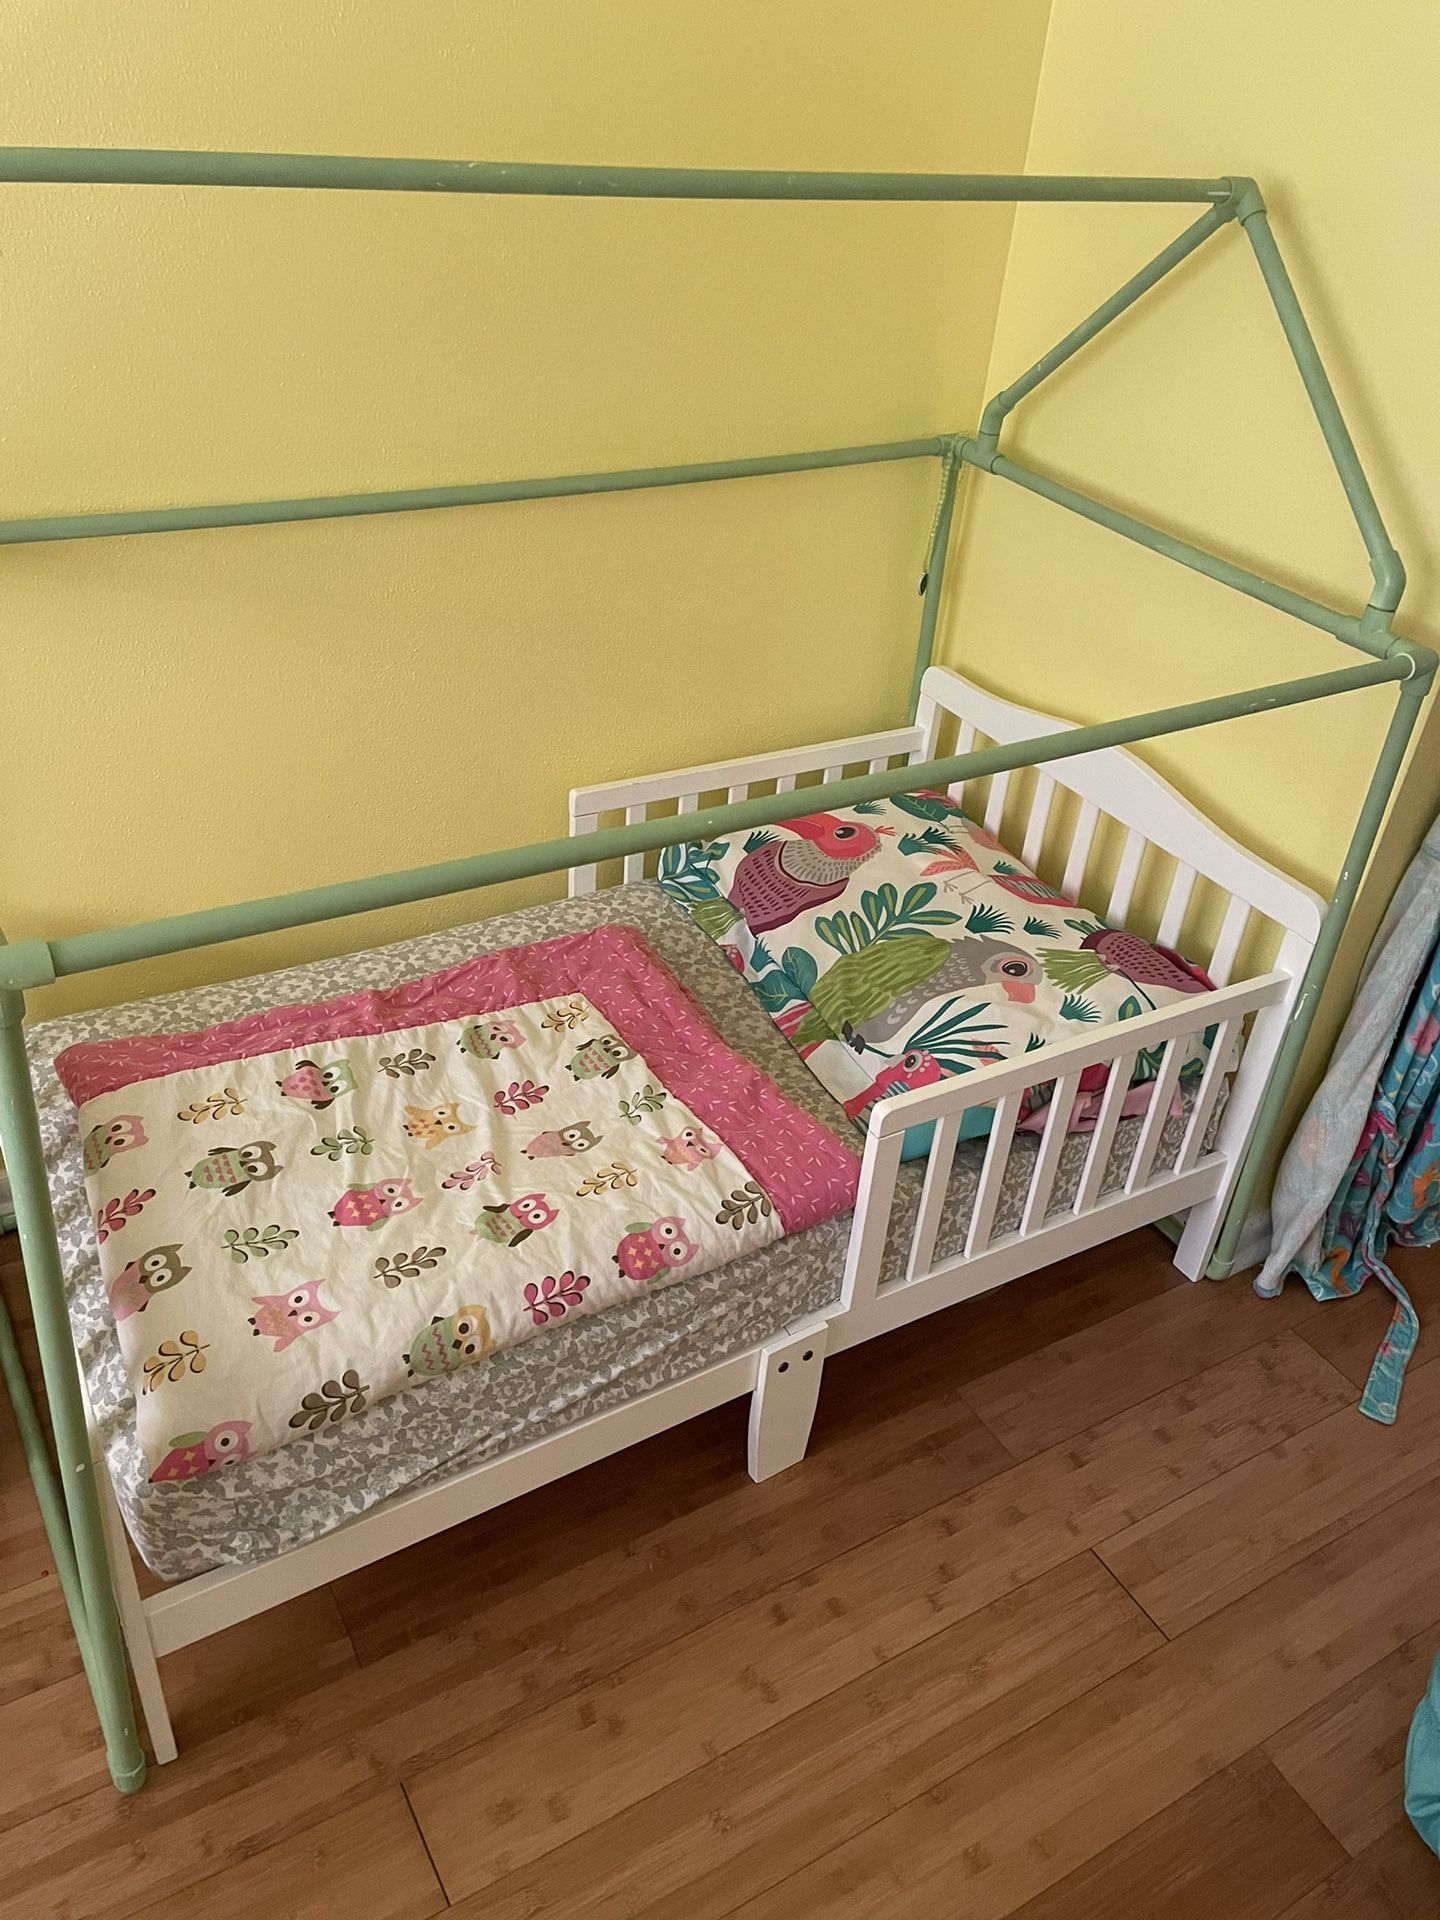 2 Wooden Toddler Beds w/mattresses